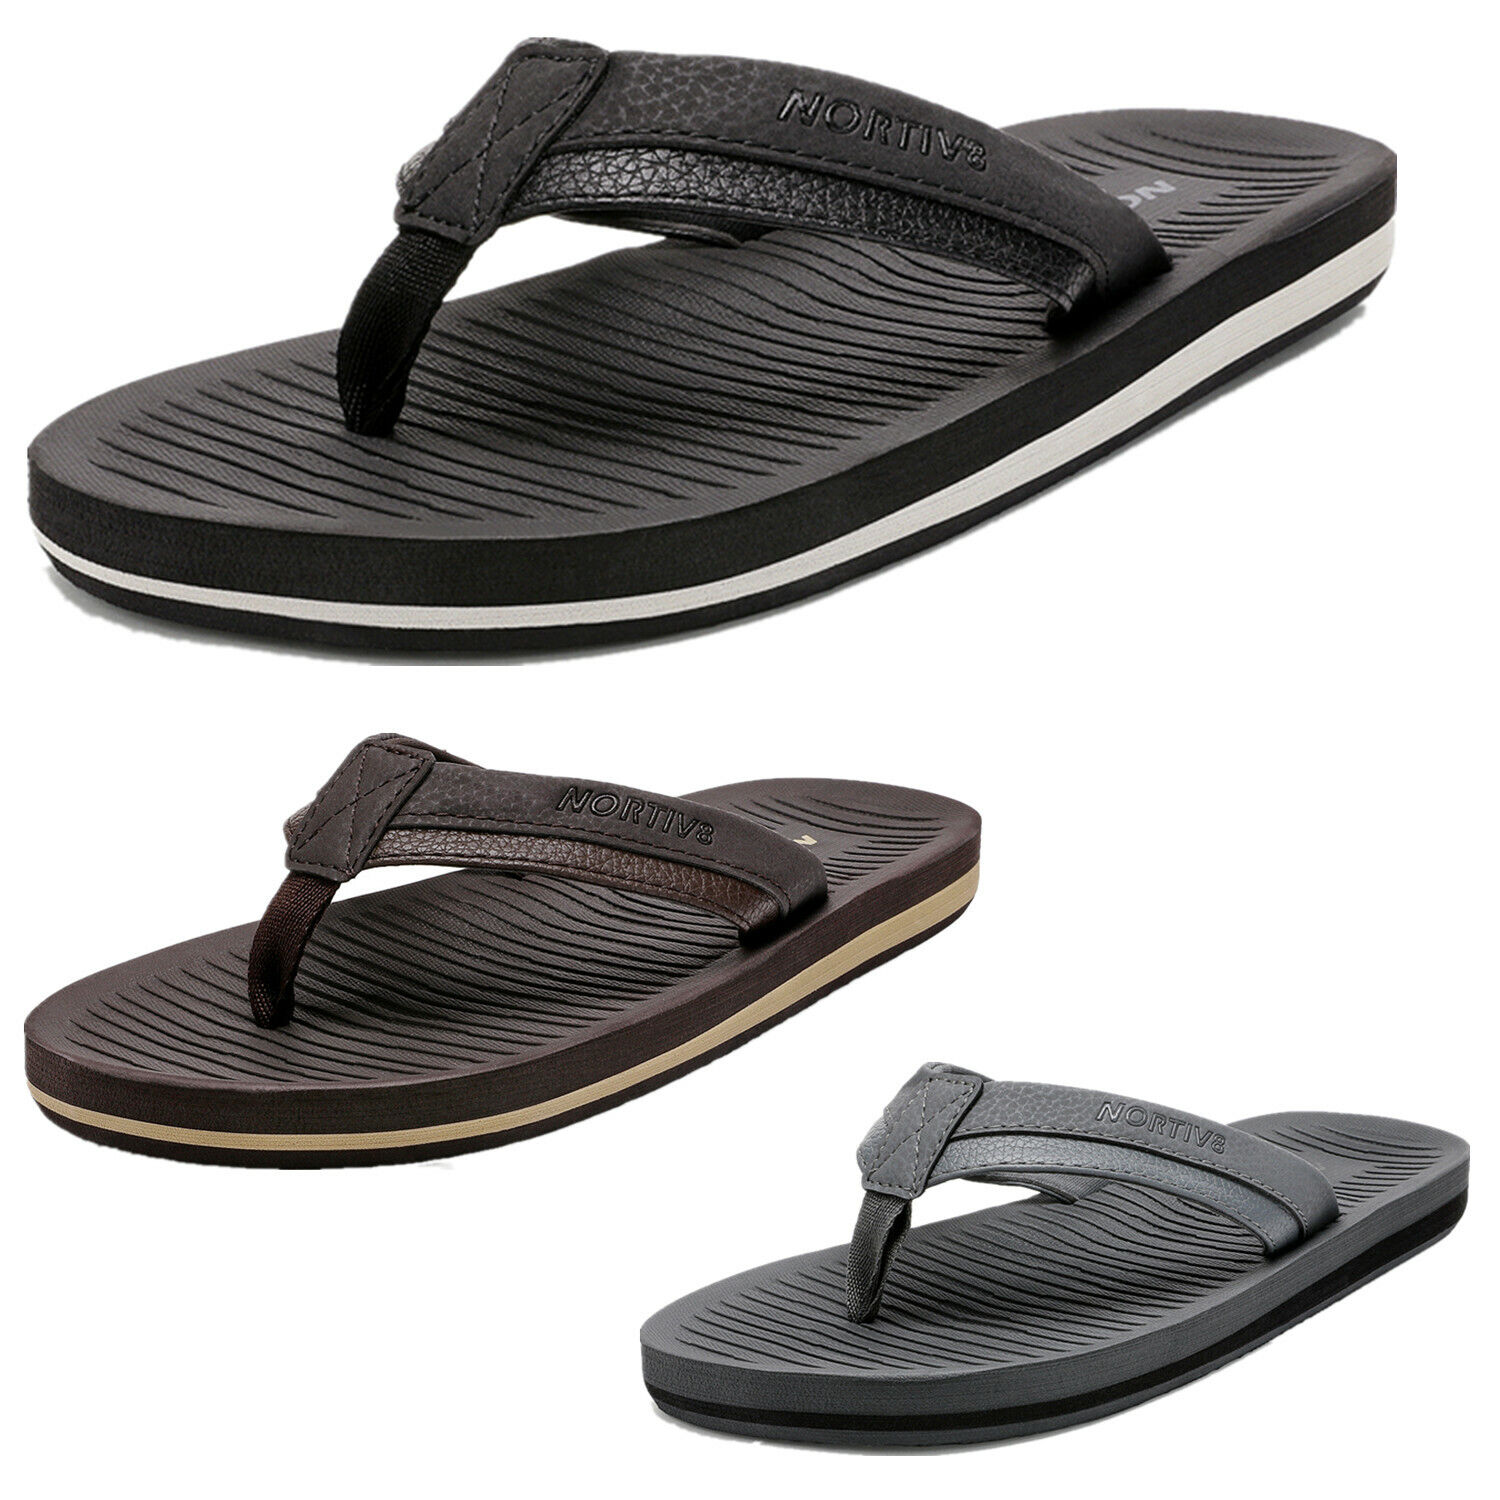 Men's Thong Flip Flops Comfort Lightweight Summer Beach Walking Sandal Slippers